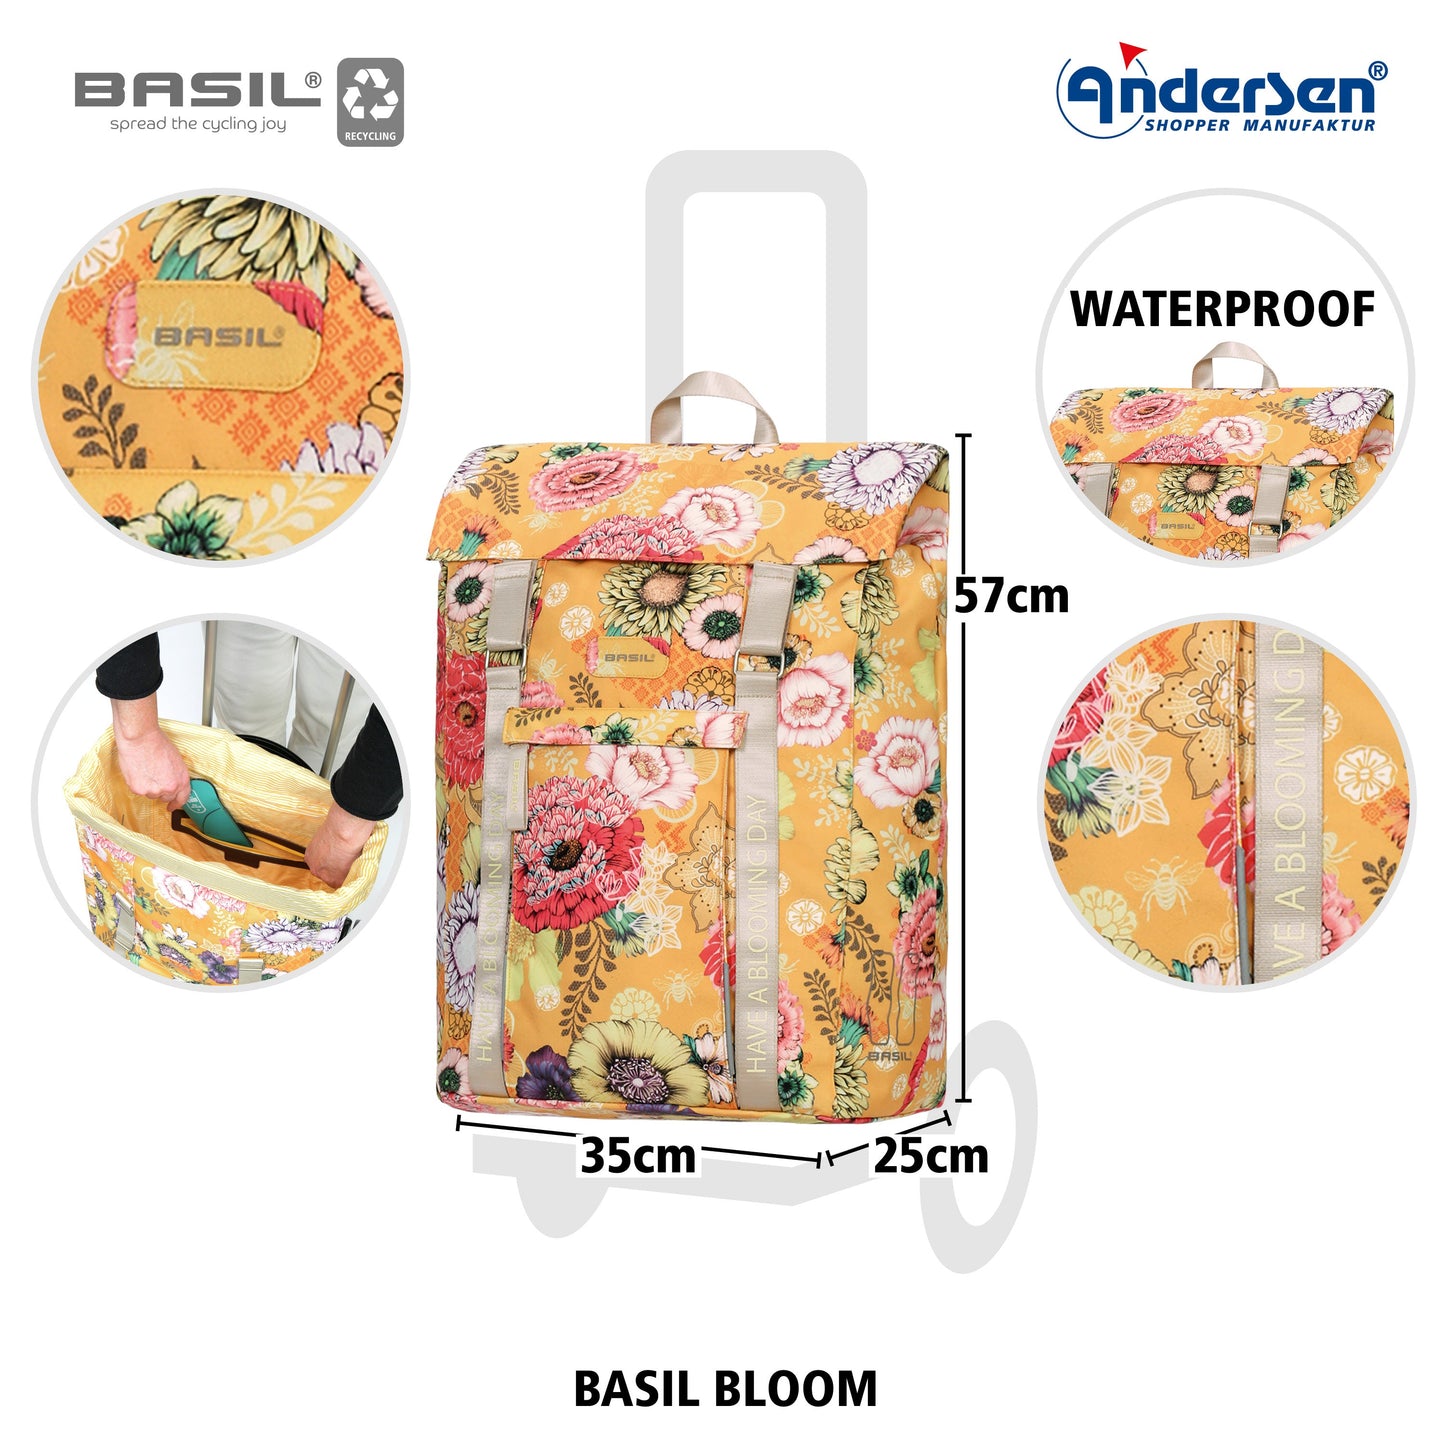 Andersen Shopper Manufaktur-Alu Star Shopper Basil Bloom gelb-www.shopping-trolley.ch-bild3